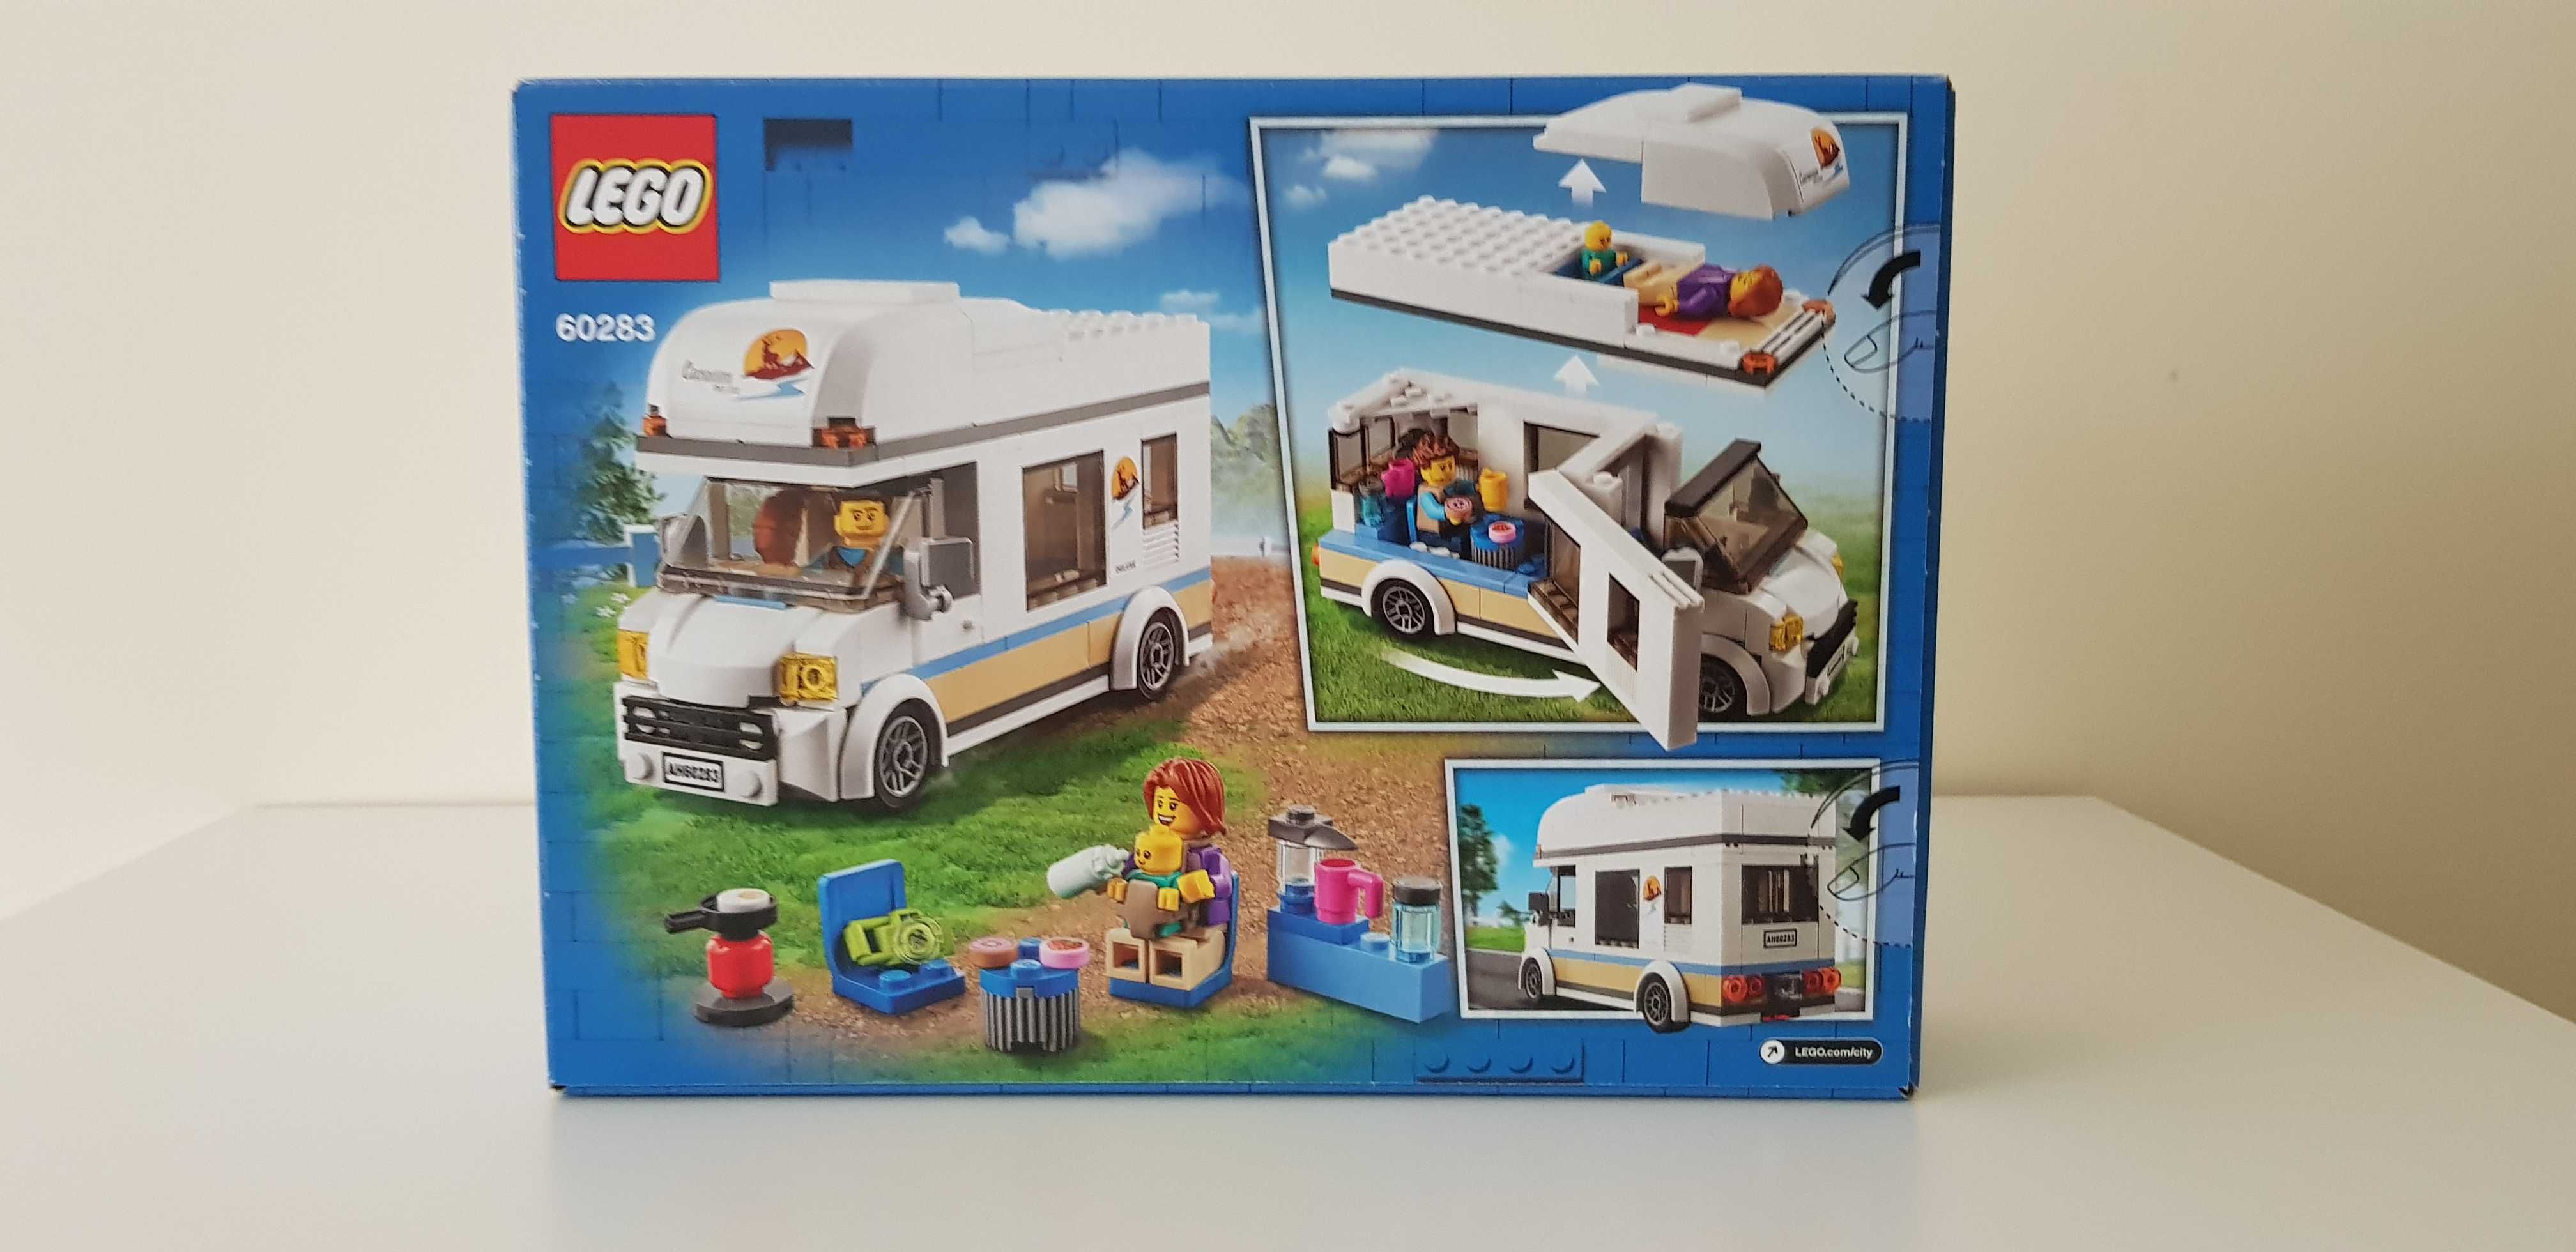 Nowe LEGO City 60283 Wakacyjny kamper